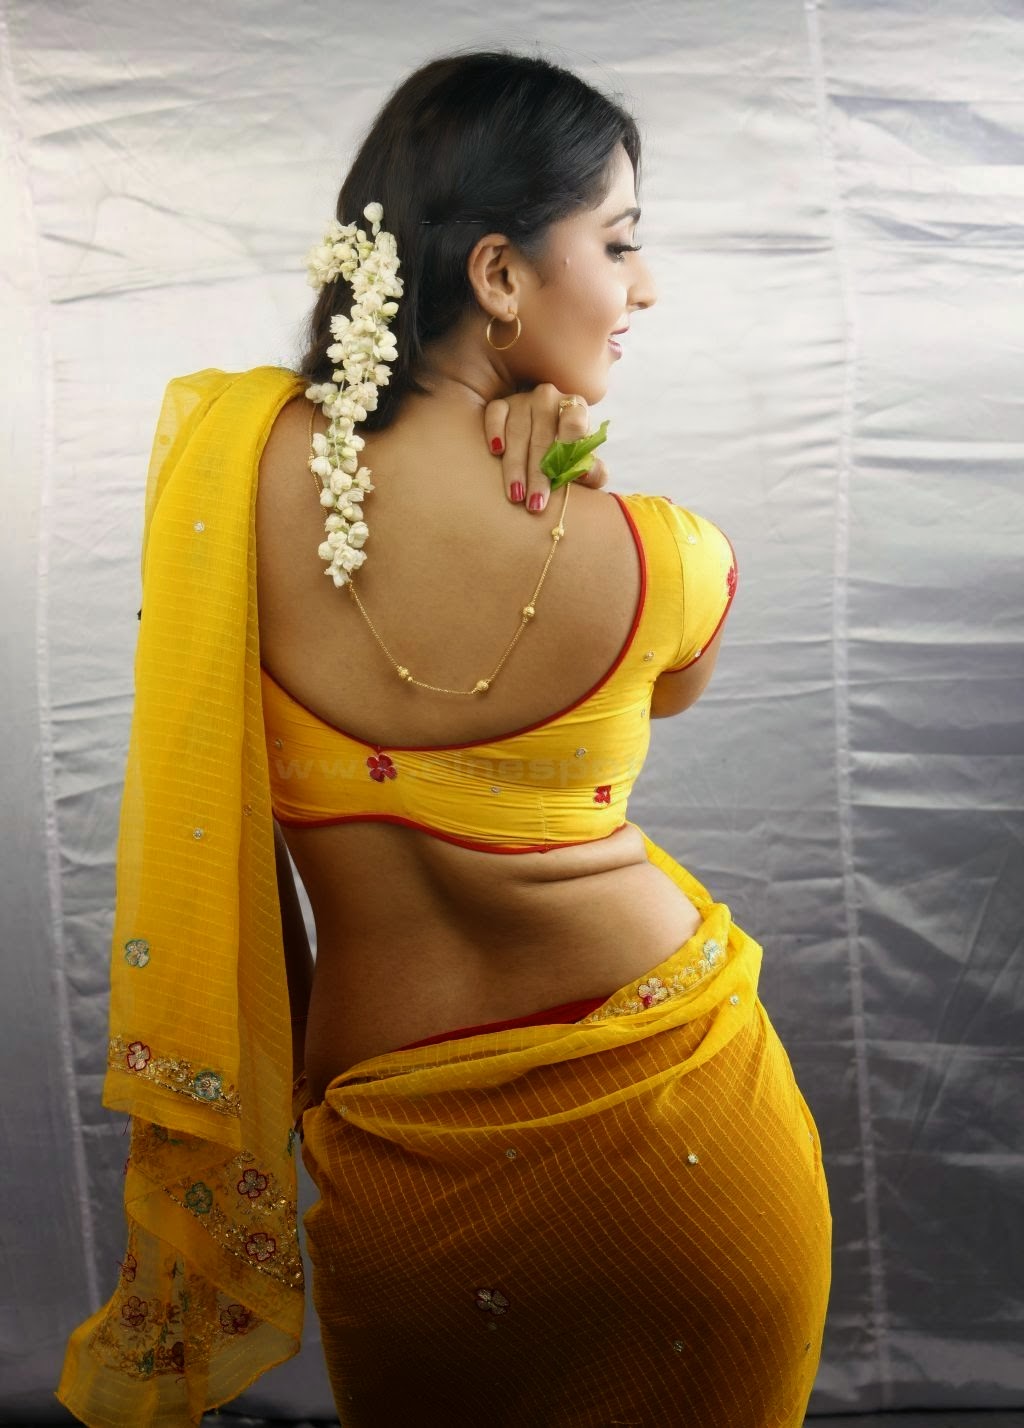 Hot Actress Images And Pics Anushka Hot Thighs And Boobs